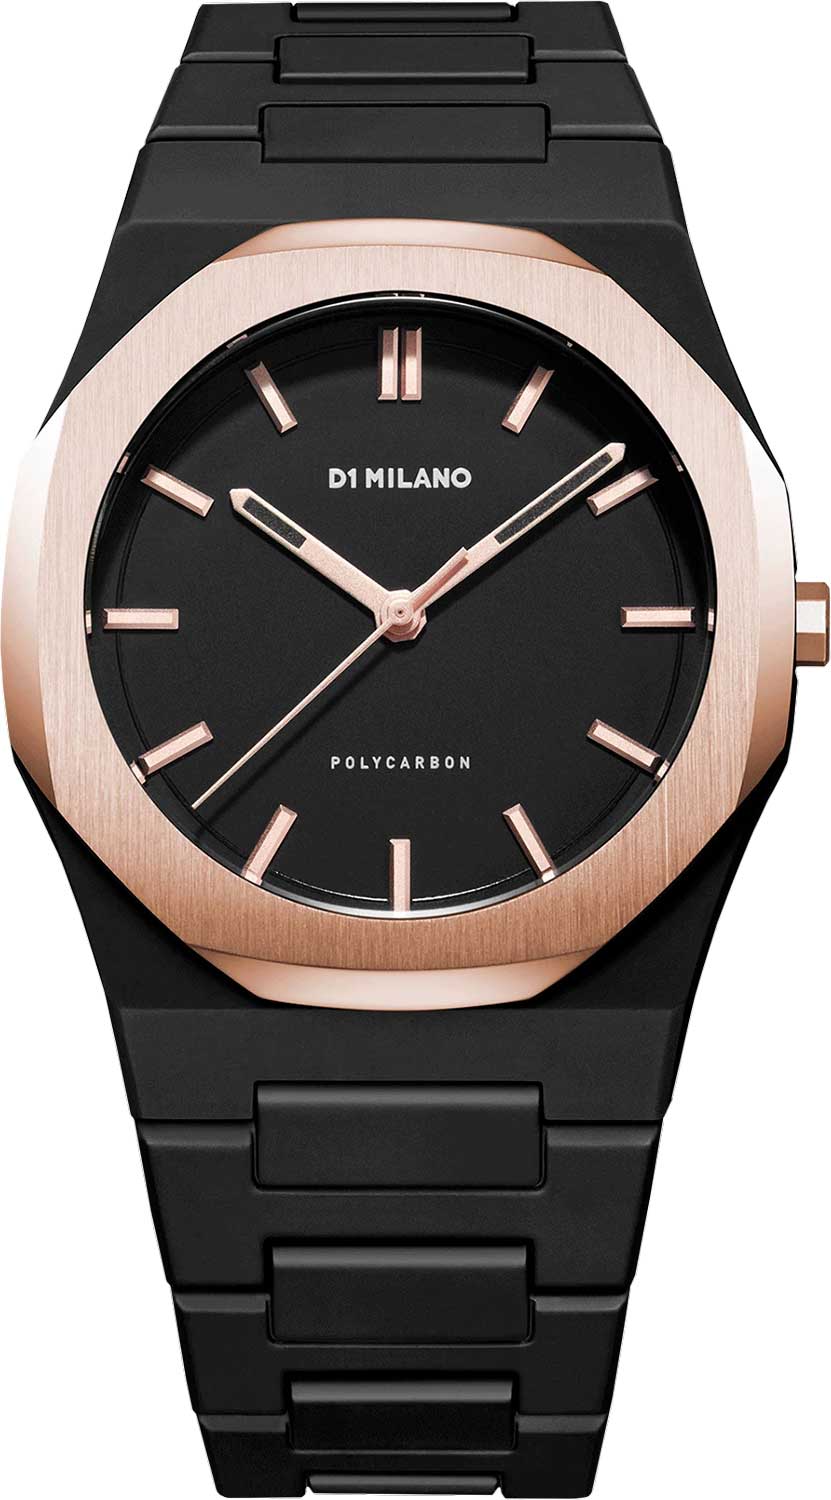 Наручные часы унисекс D1 Milano PCBJ15 черные